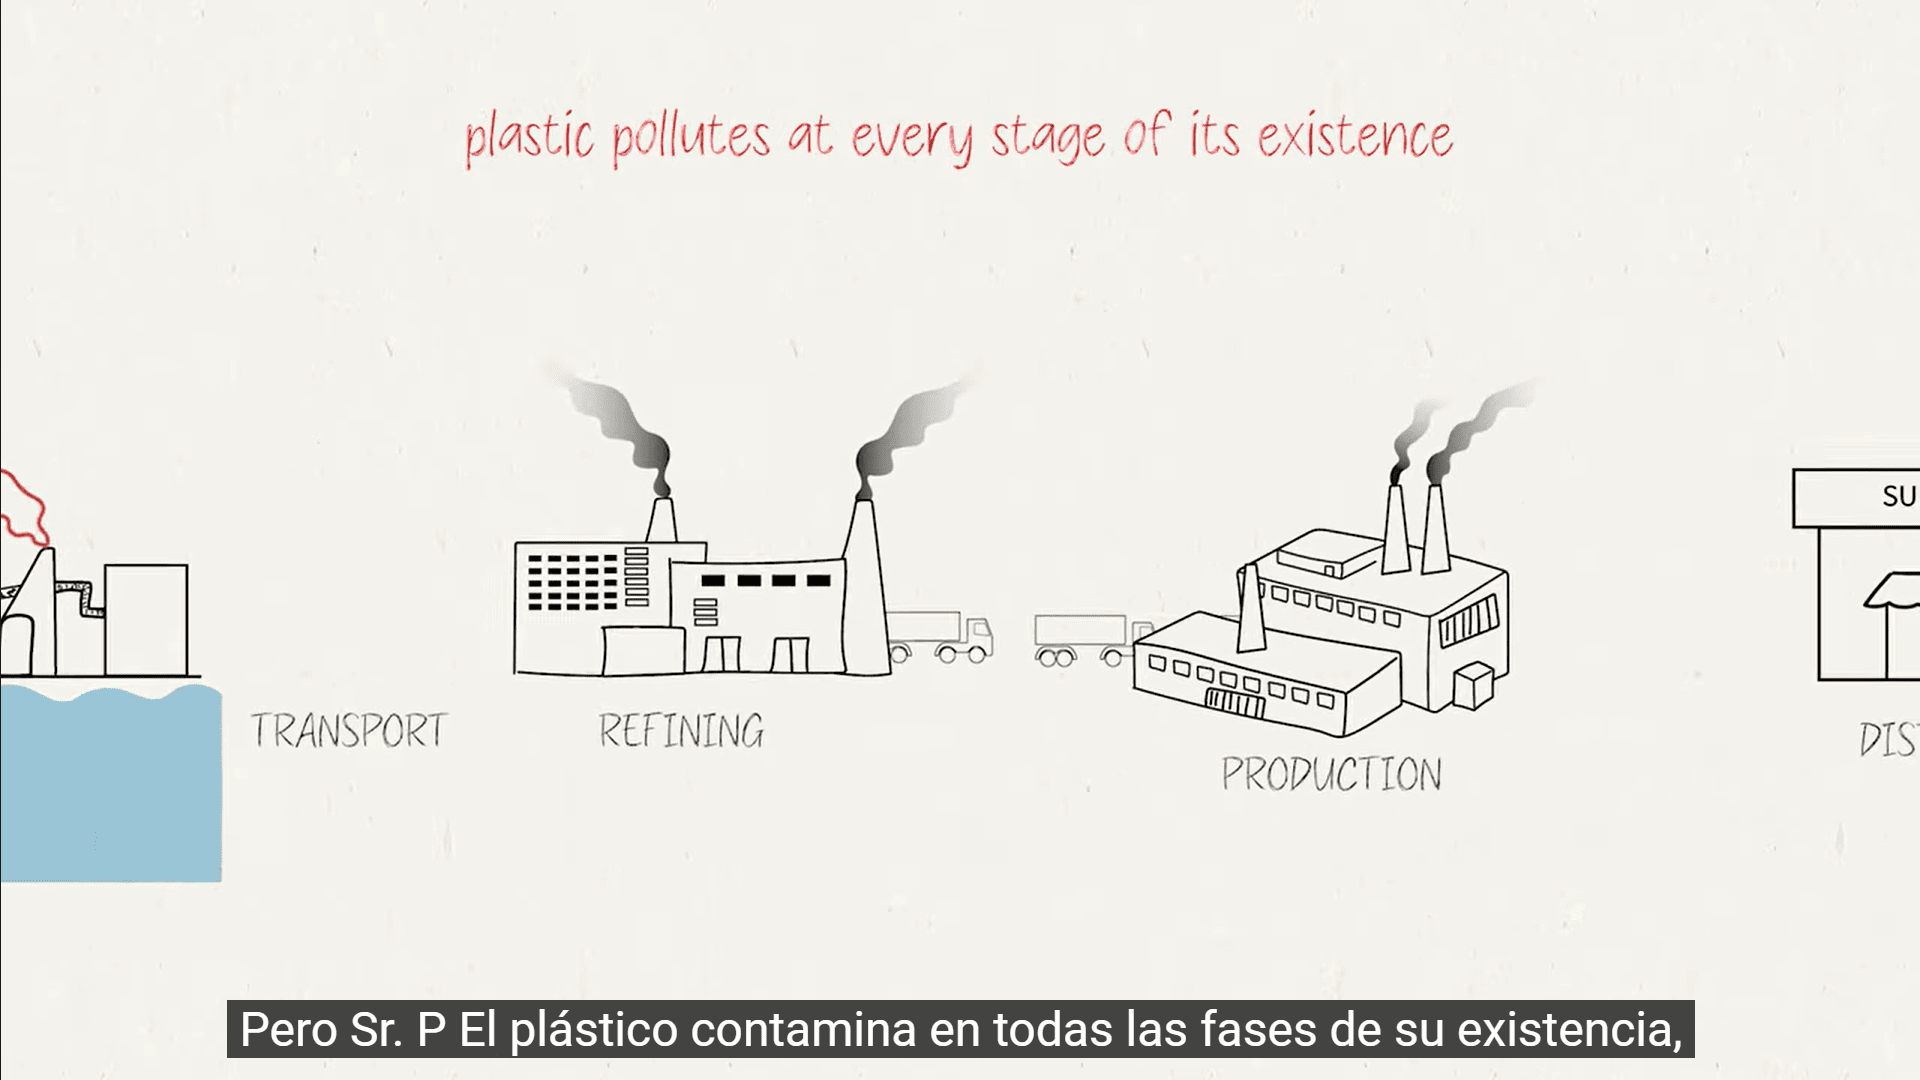 プラスチック生産のいくつかの段階、特に輸送、精製、生産のスケッチ。画面上のテキスト: プラスチックはその存在のあらゆる段階で汚染します。存在するラス・ファセスを汚染するプラスチック